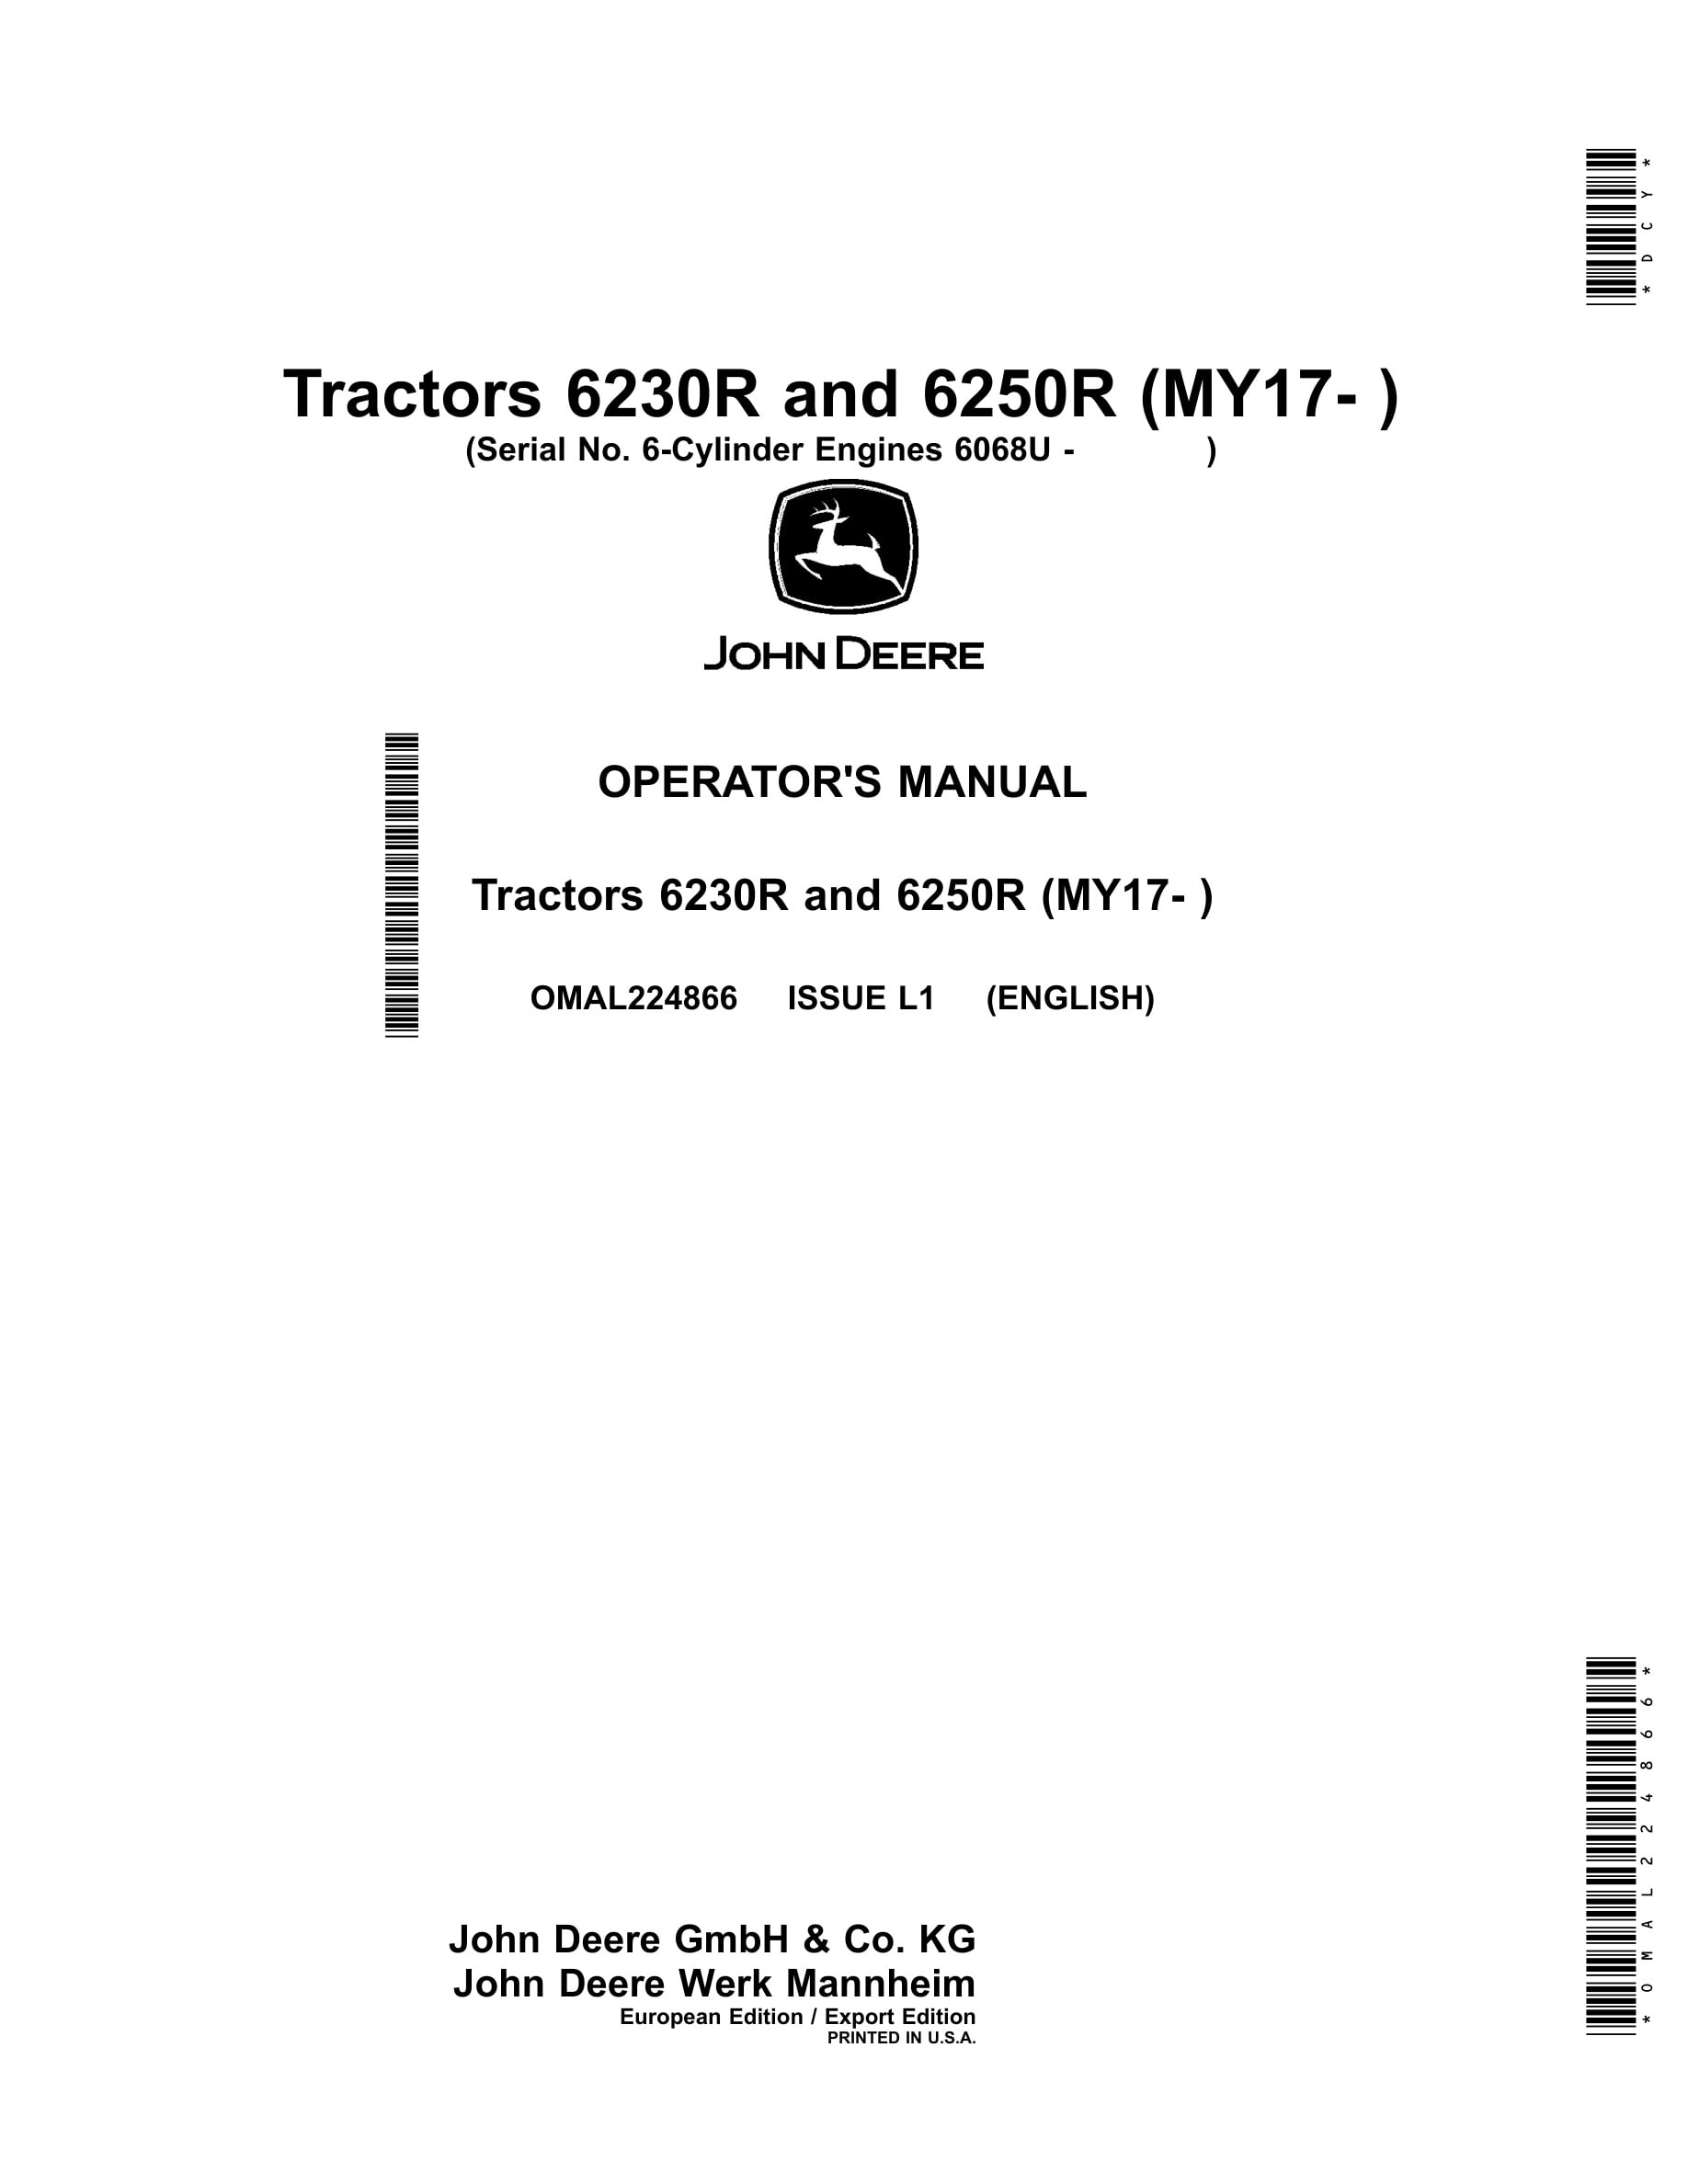 John Deere 6230r And 6250r Tractors Operator Manuals OMAL224866-1